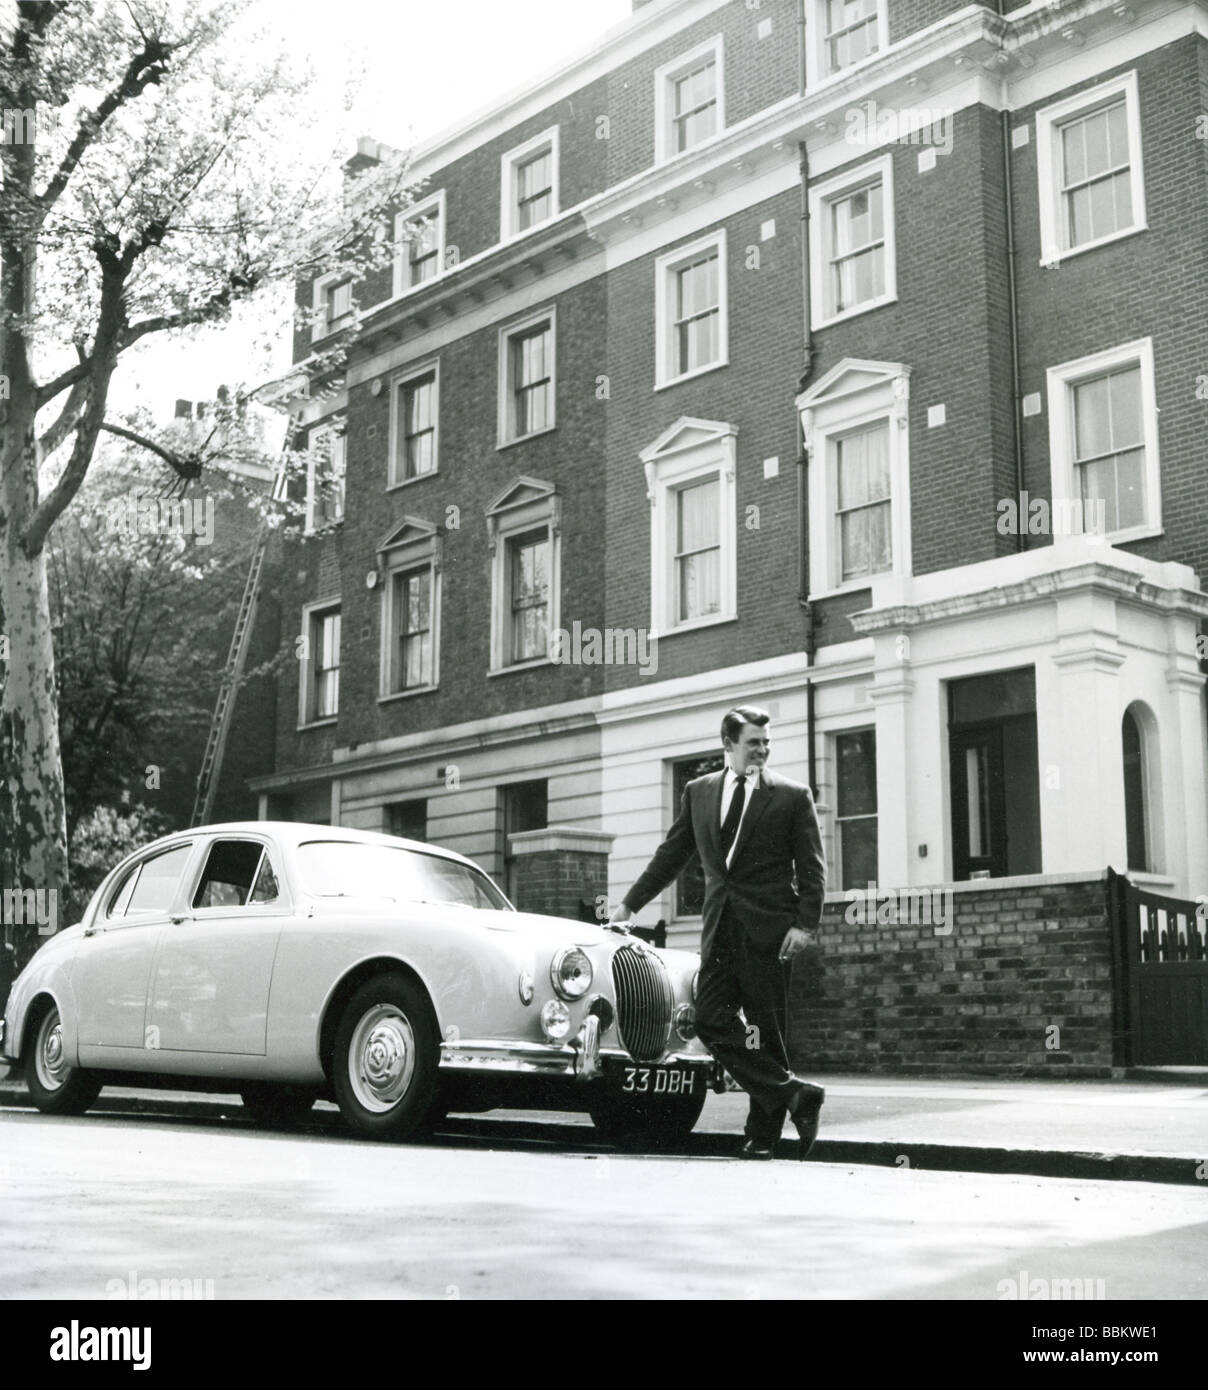 RUSS CONWAY - UK light music artiste à son domicile de Londres en 1959 Banque D'Images